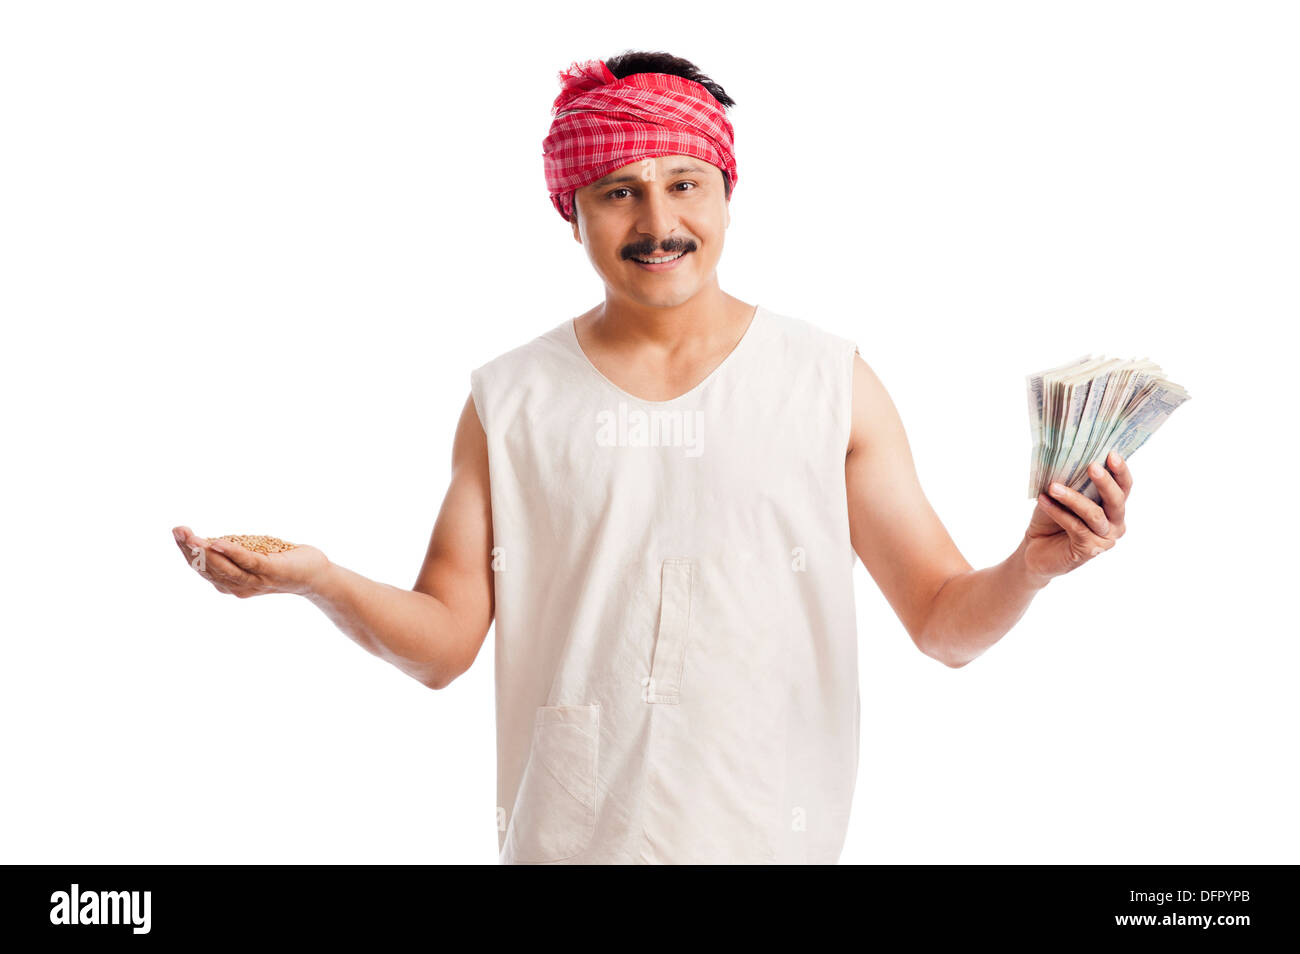 Ritratto di un agricoltore che detiene i soldi in una mano e il frumento in un altro canto Foto Stock